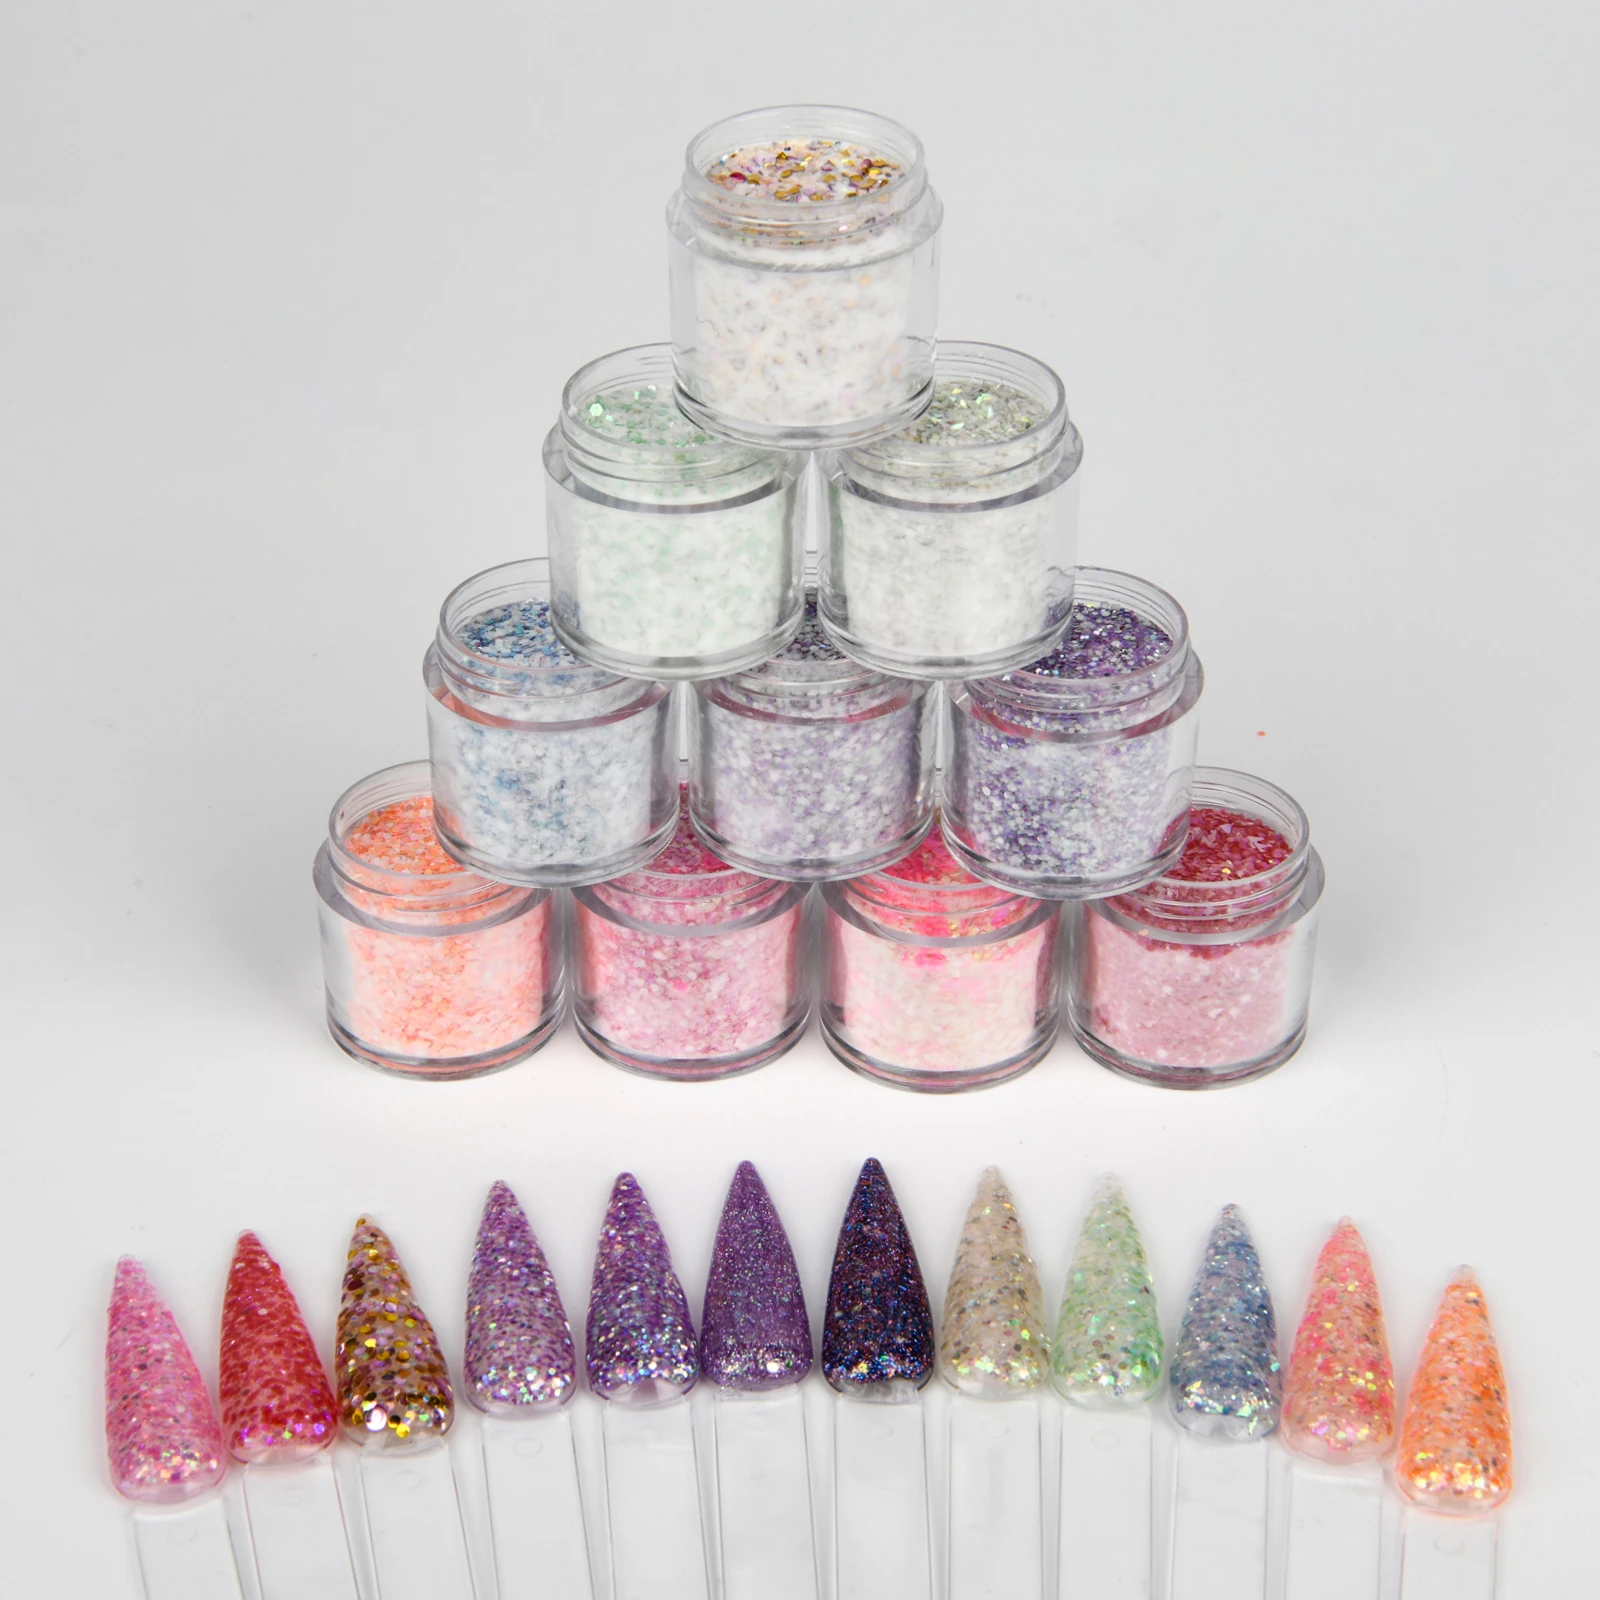 10g/box Flake Glitter Acrylic Nail Art Powder Set